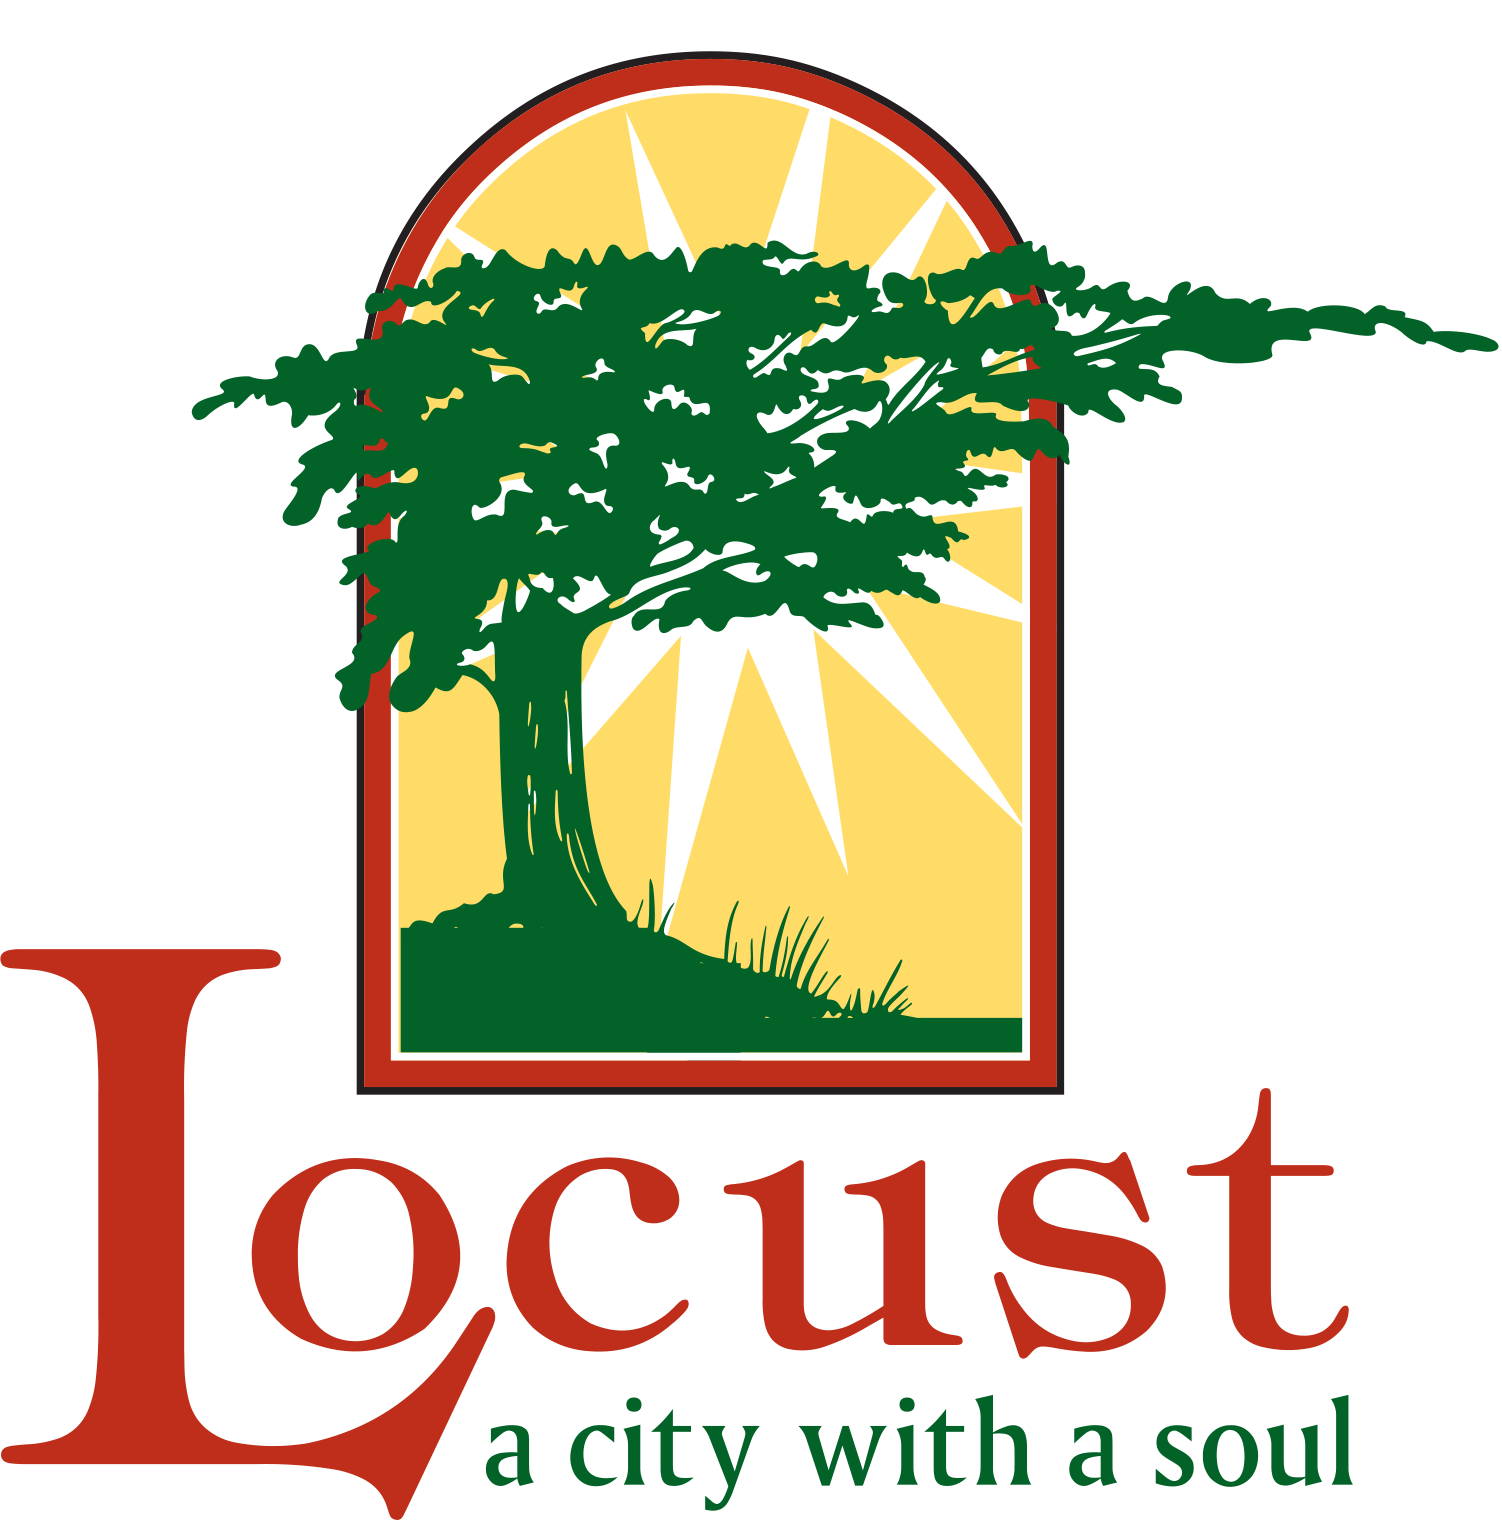 City of Locust logo design